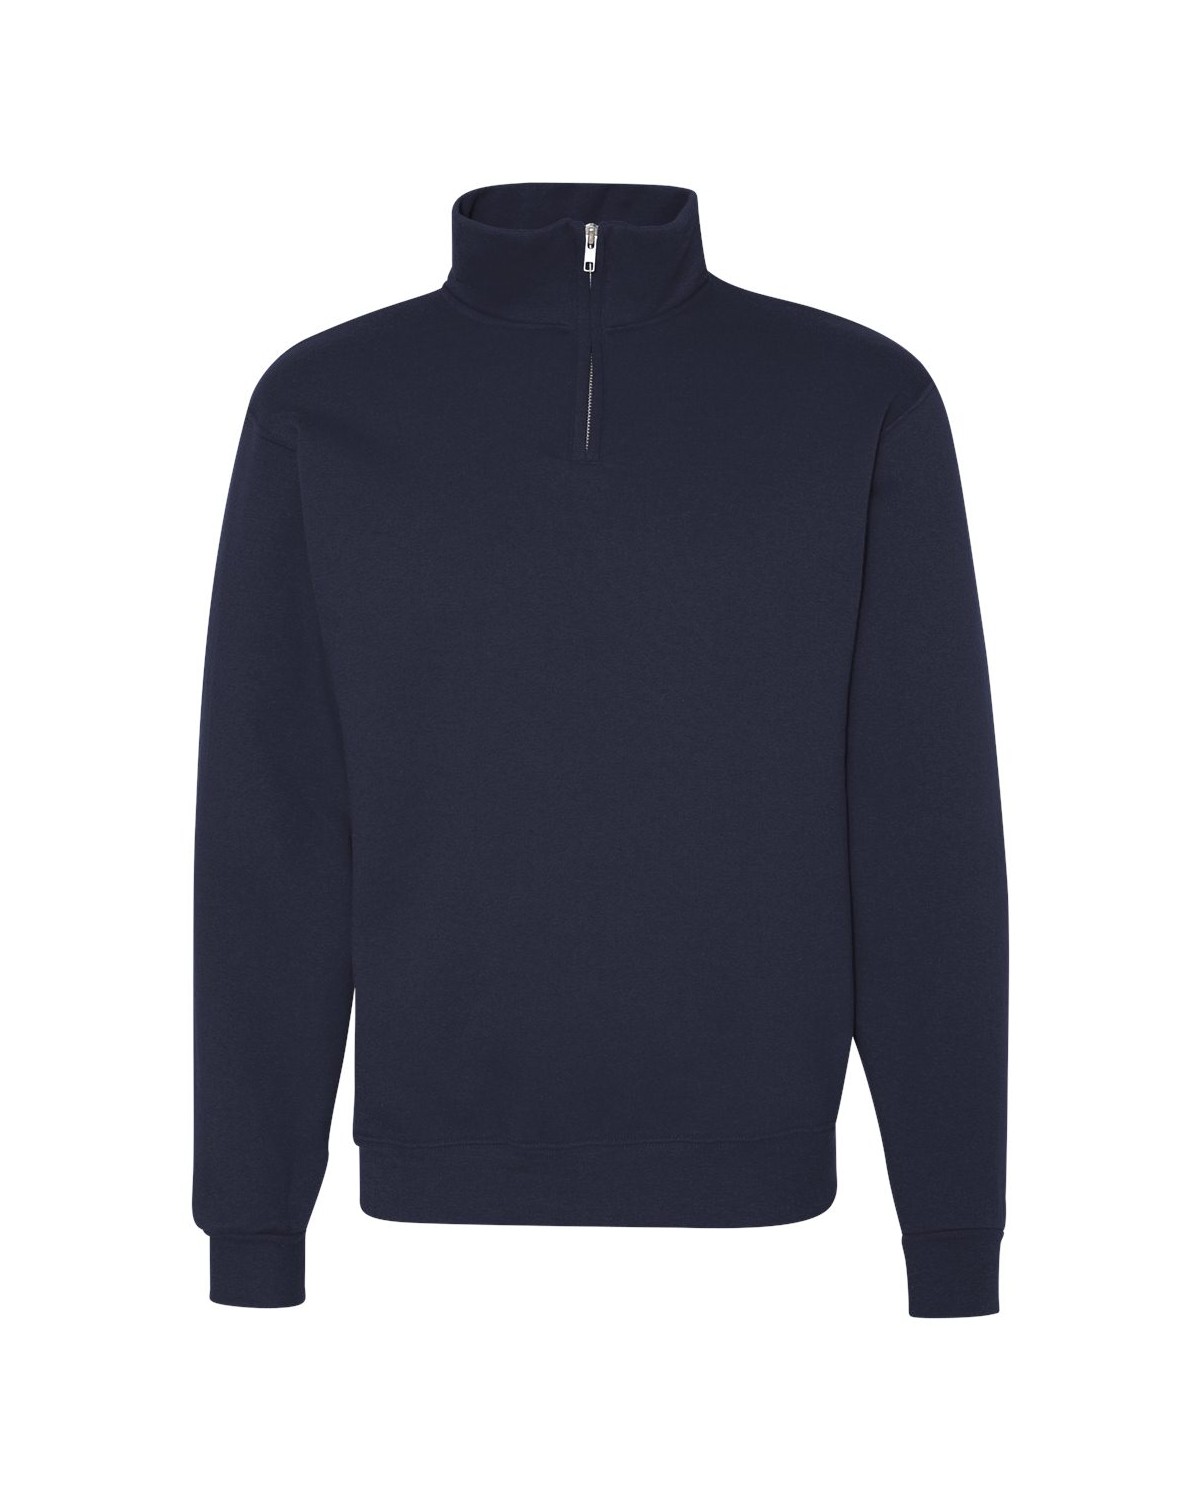 JERZEES 995MR Nublend Cadet Collar Quarter-Zip Sweatshirt